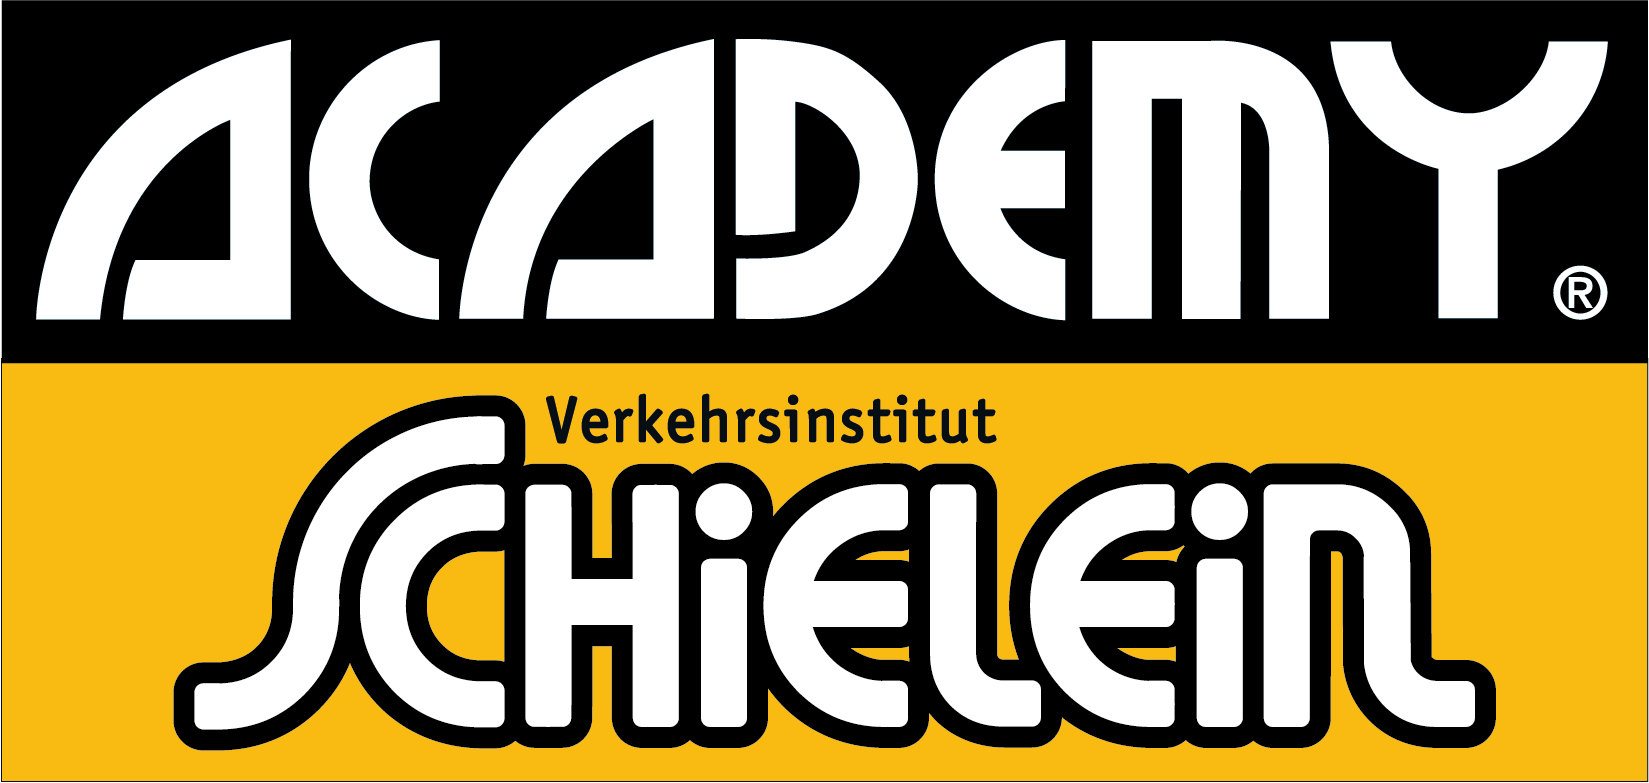 Verkehrsinstitut Schielein GmbH